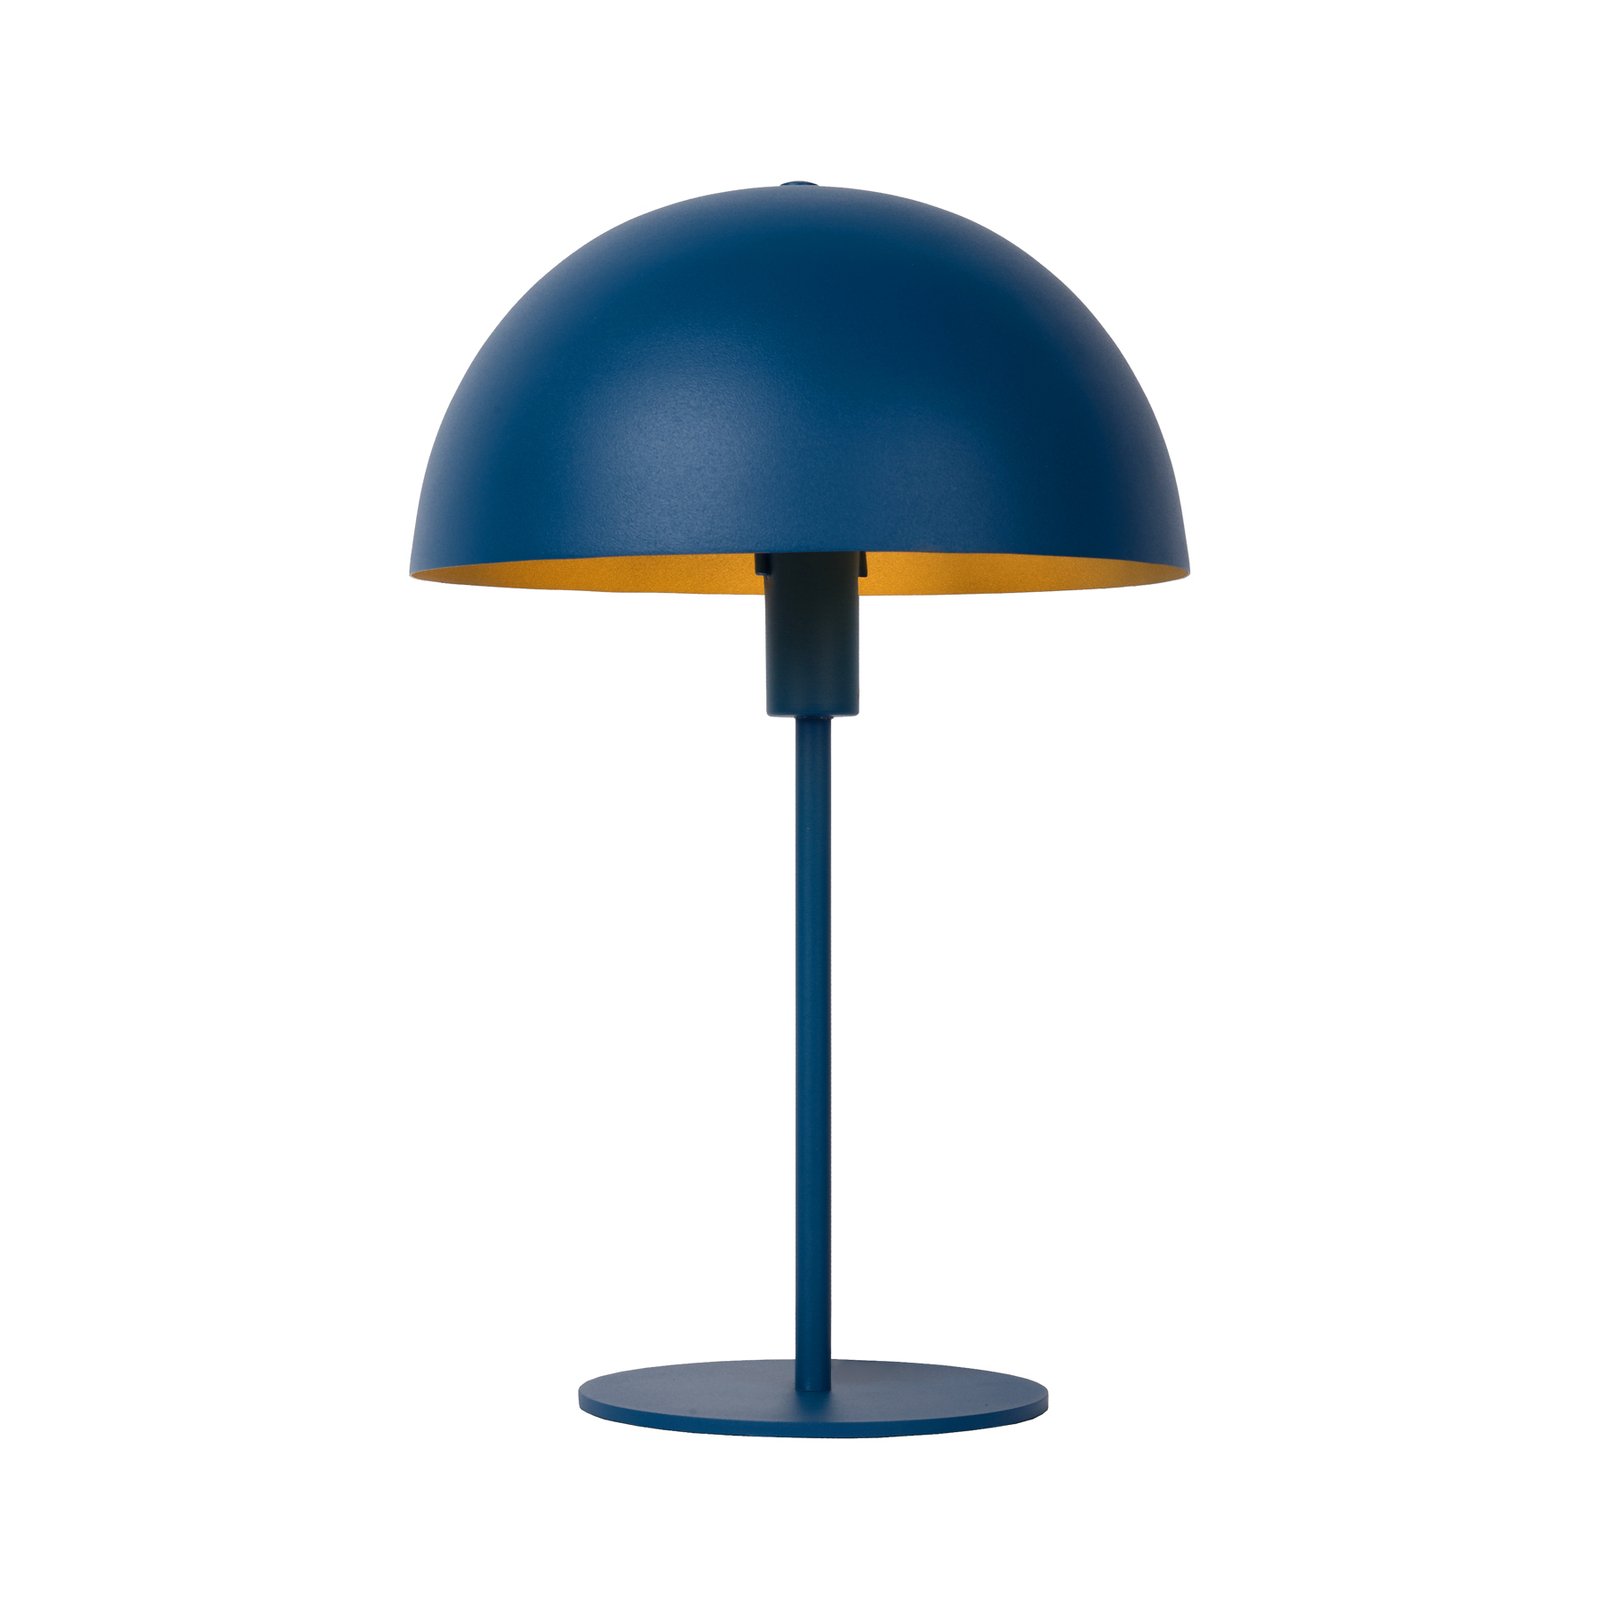 Siemon bordlampe i stål, Ø 25 cm, blå